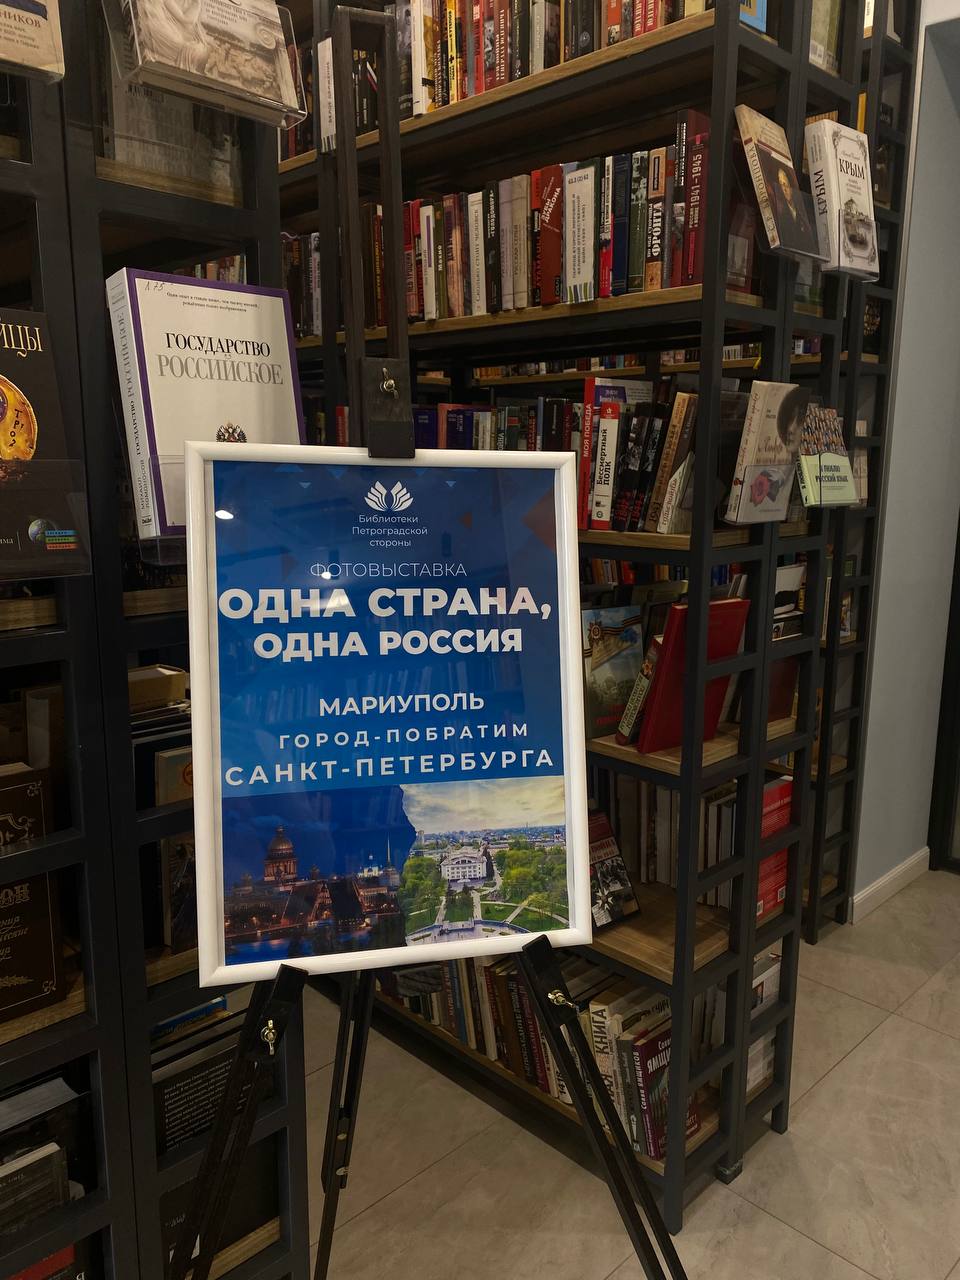 «Одна страна, одна семья, одна Россия!» - именно под таким слоганом прошли мероприятия в Библиотеках Петроградской стороны, посвященные Дню воссоединения Донбасса и Новороссии с Россией.